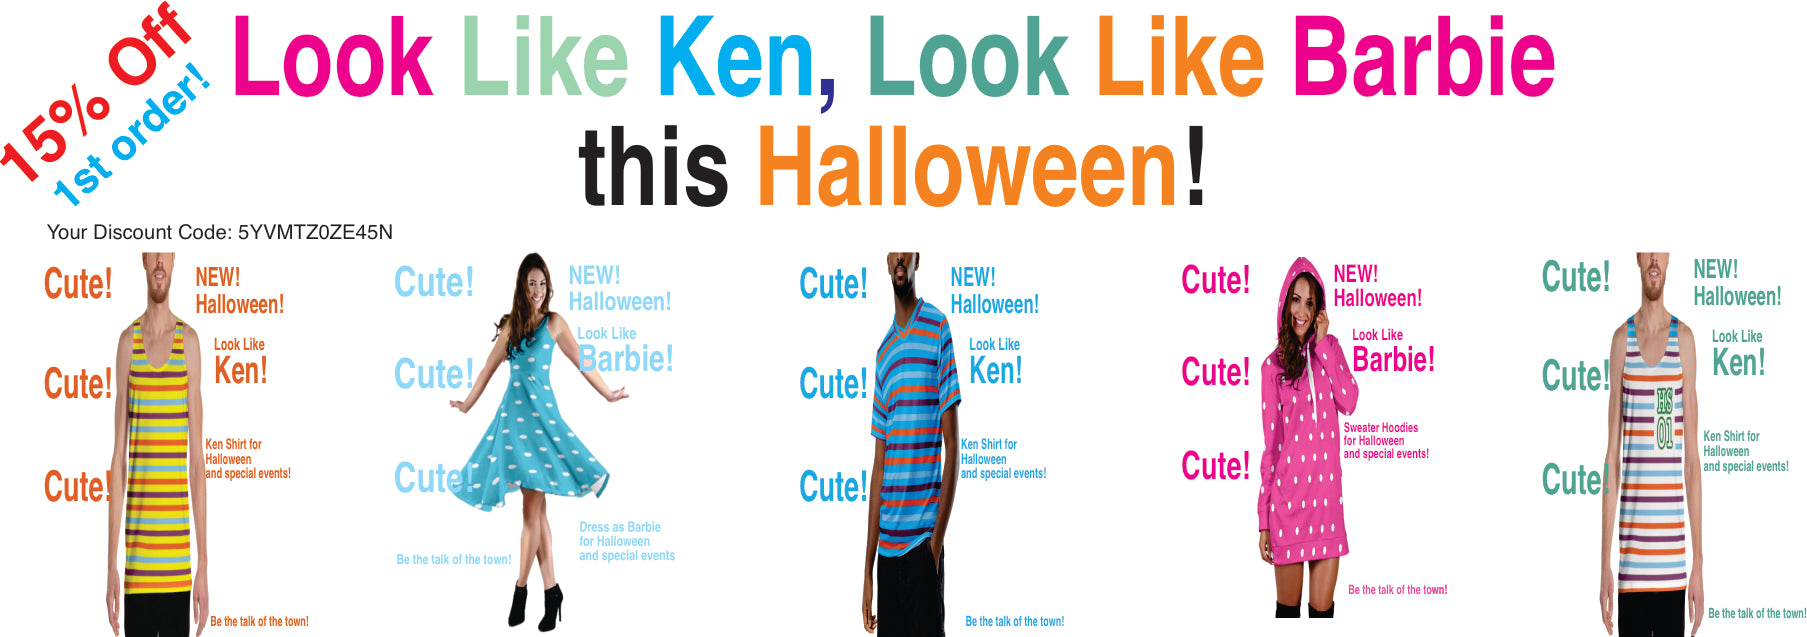 look like ken, look like barbie ad